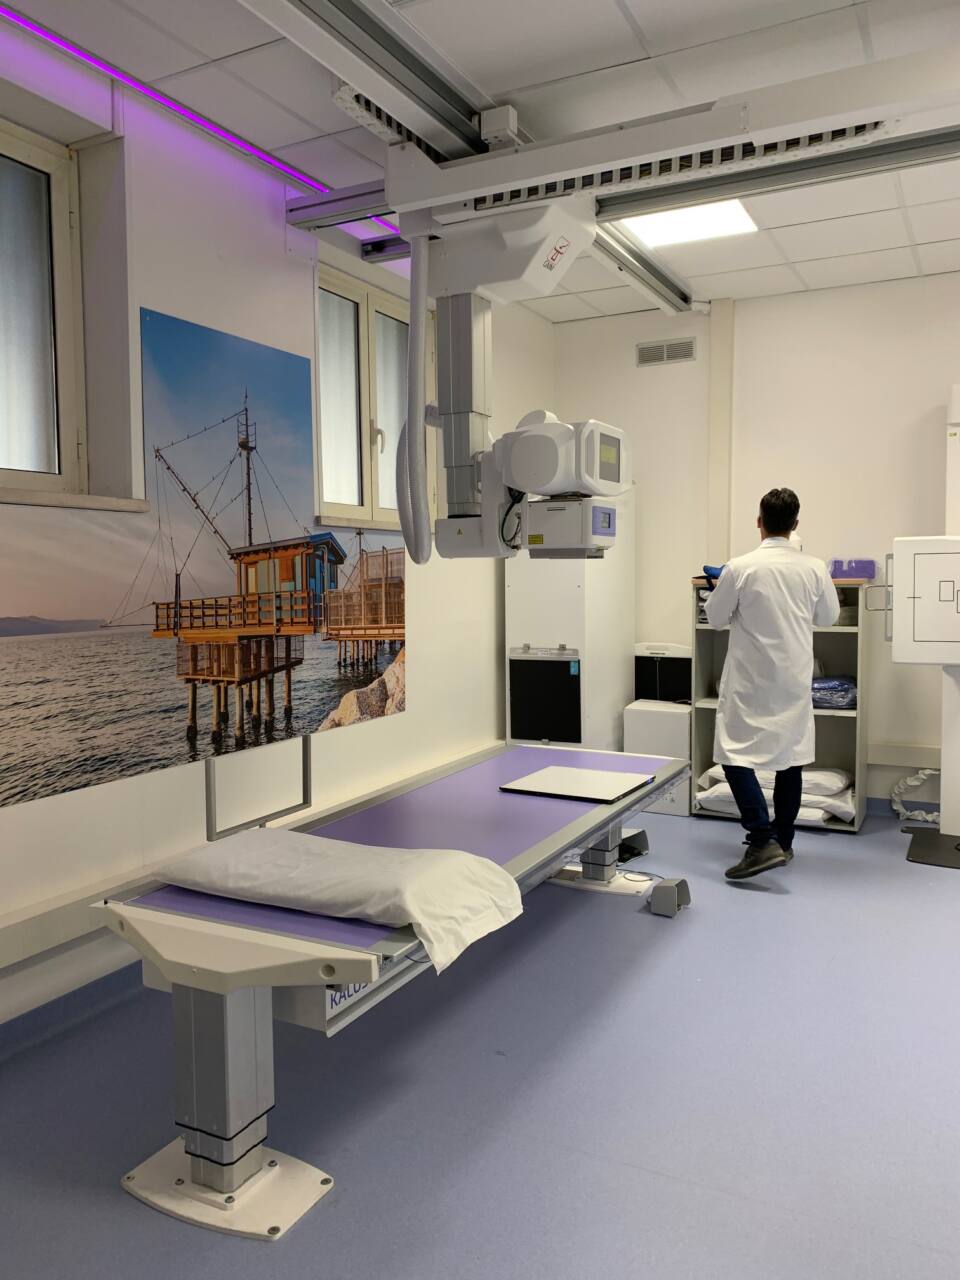 La nuova risonanza installata e già in funzione nel reparto di Radiologia dell’ospedale Santa Croce di Fano